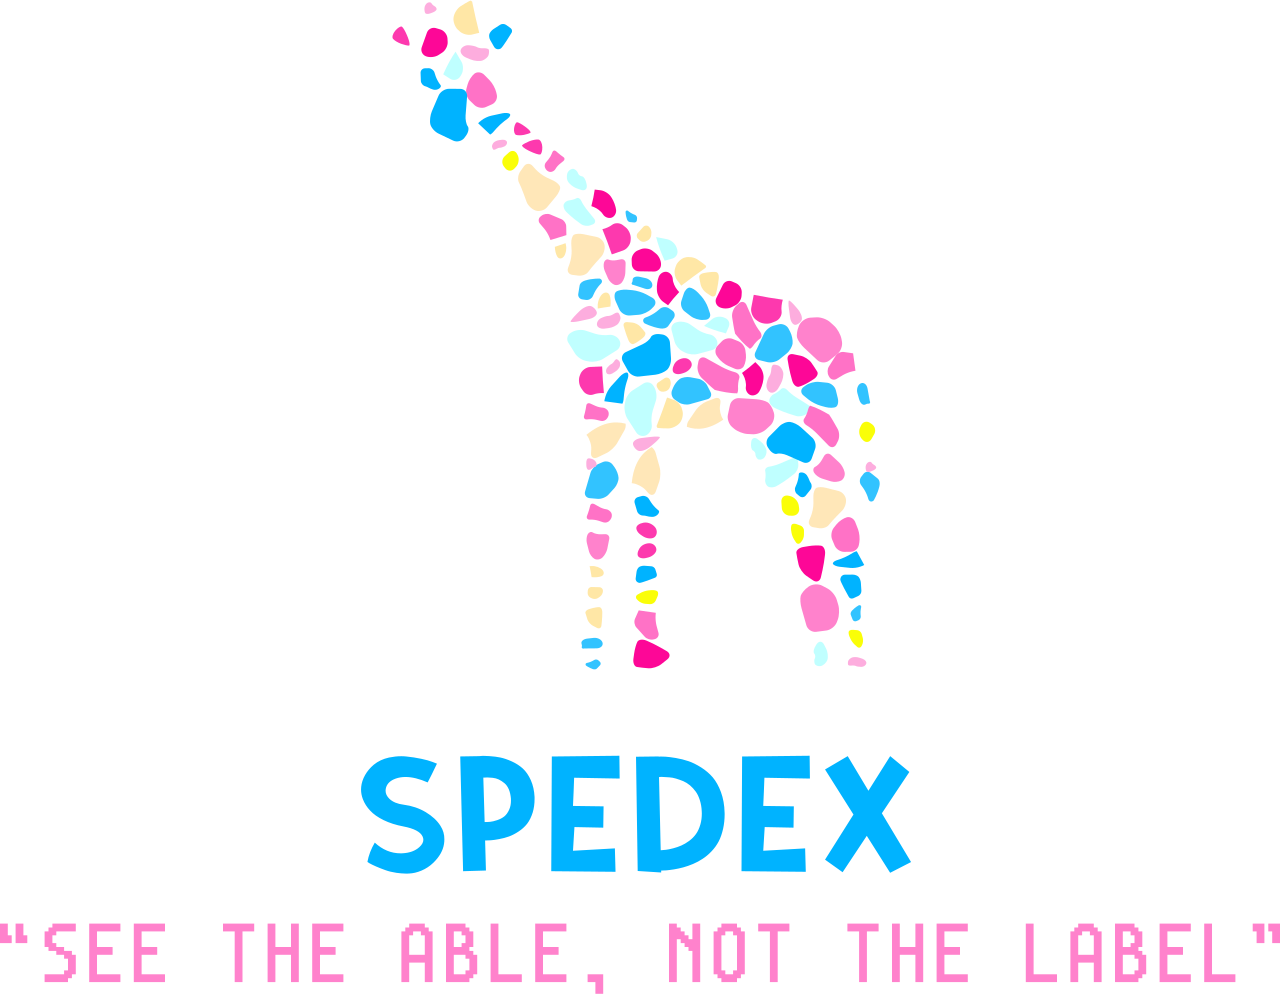 SpedEx's web page